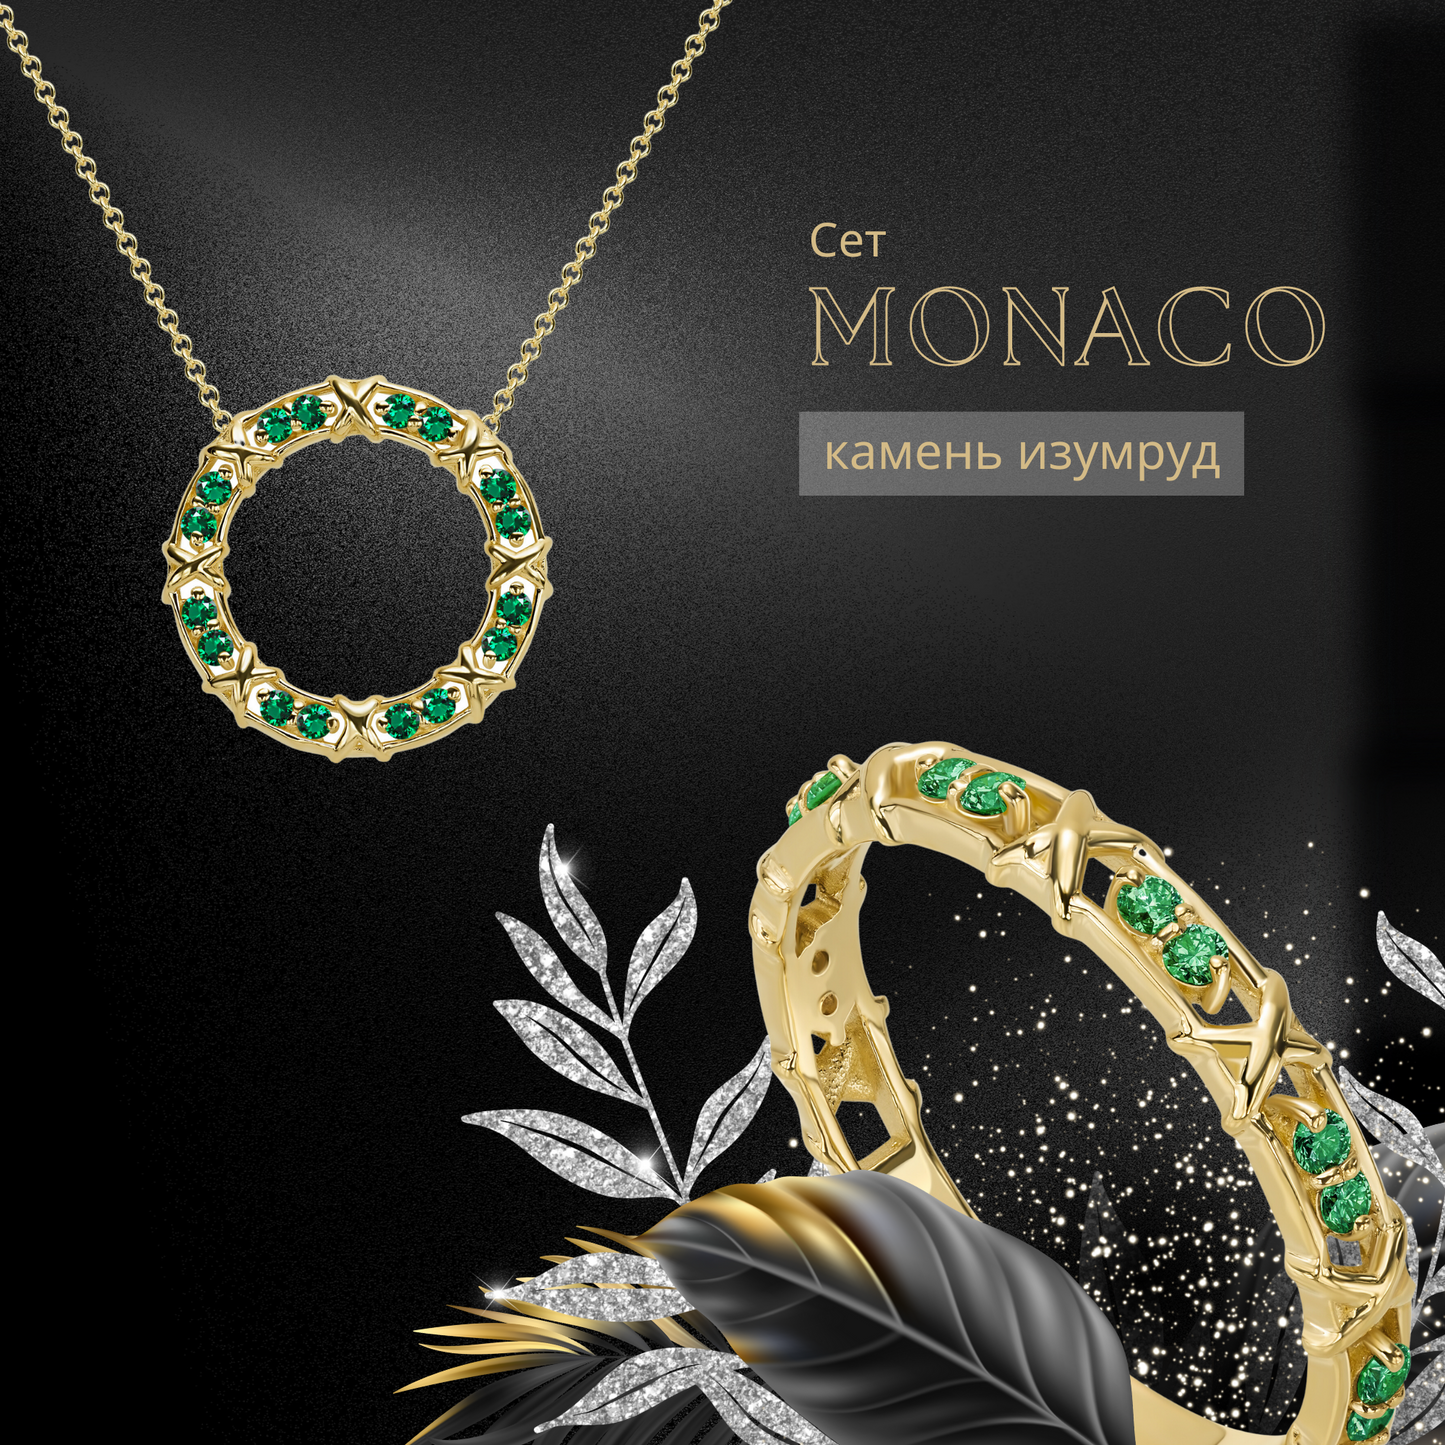 Сет "MONACO" - кулон с цепочкой и кольцо - 14 каратное золото и бриллианты